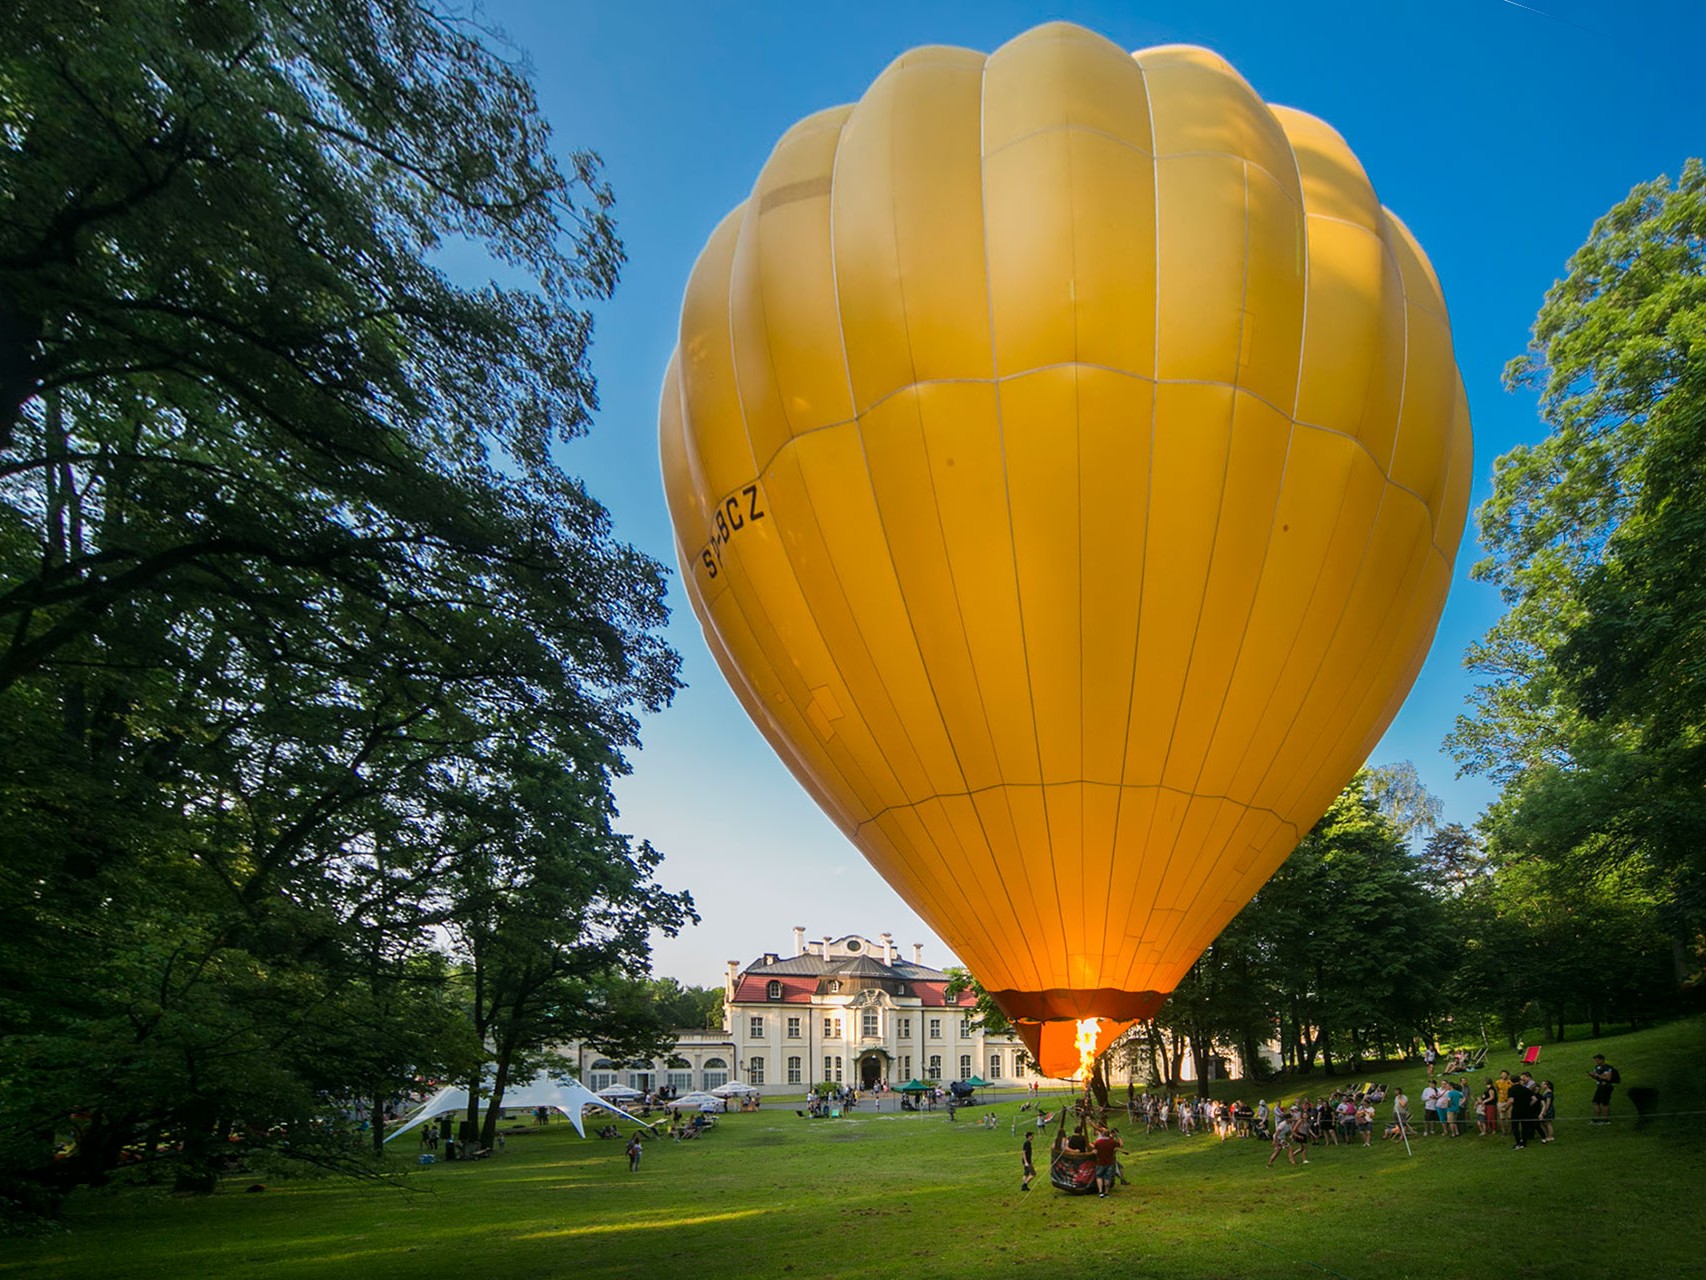 Lot balonem w parku Pałacu Goetz podczas imprezy plenerowej